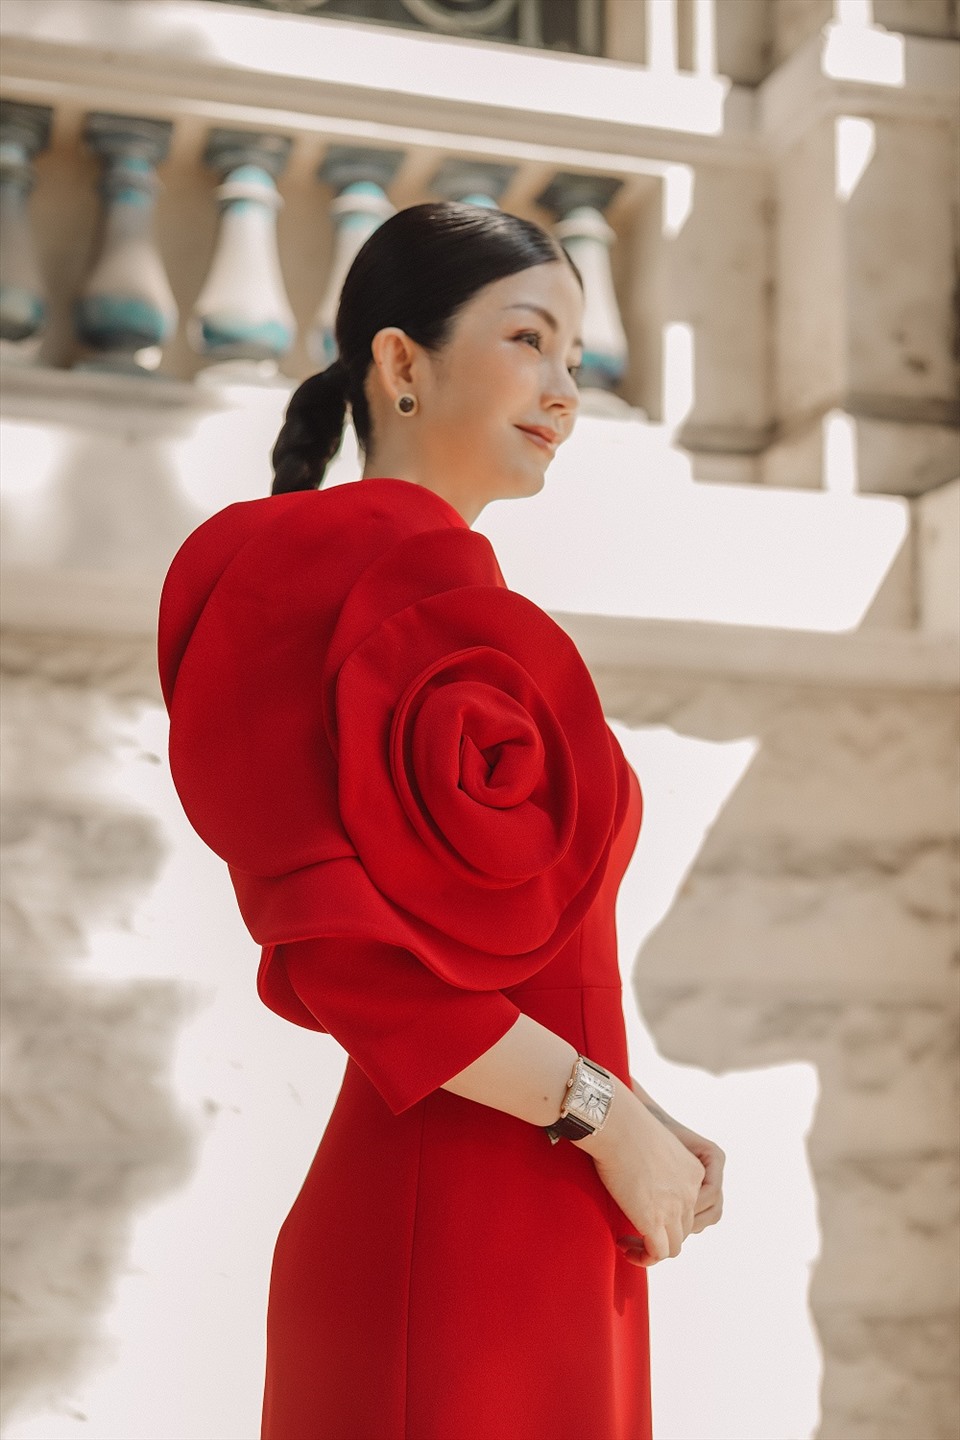 Với hình ảnh thanh lịch và tính ứng dụng cao, Angela Ngô chinh phục những người yêu thời trang bởi sự thanh lịch thoải mái, tiện dụng và không lỗi thời.